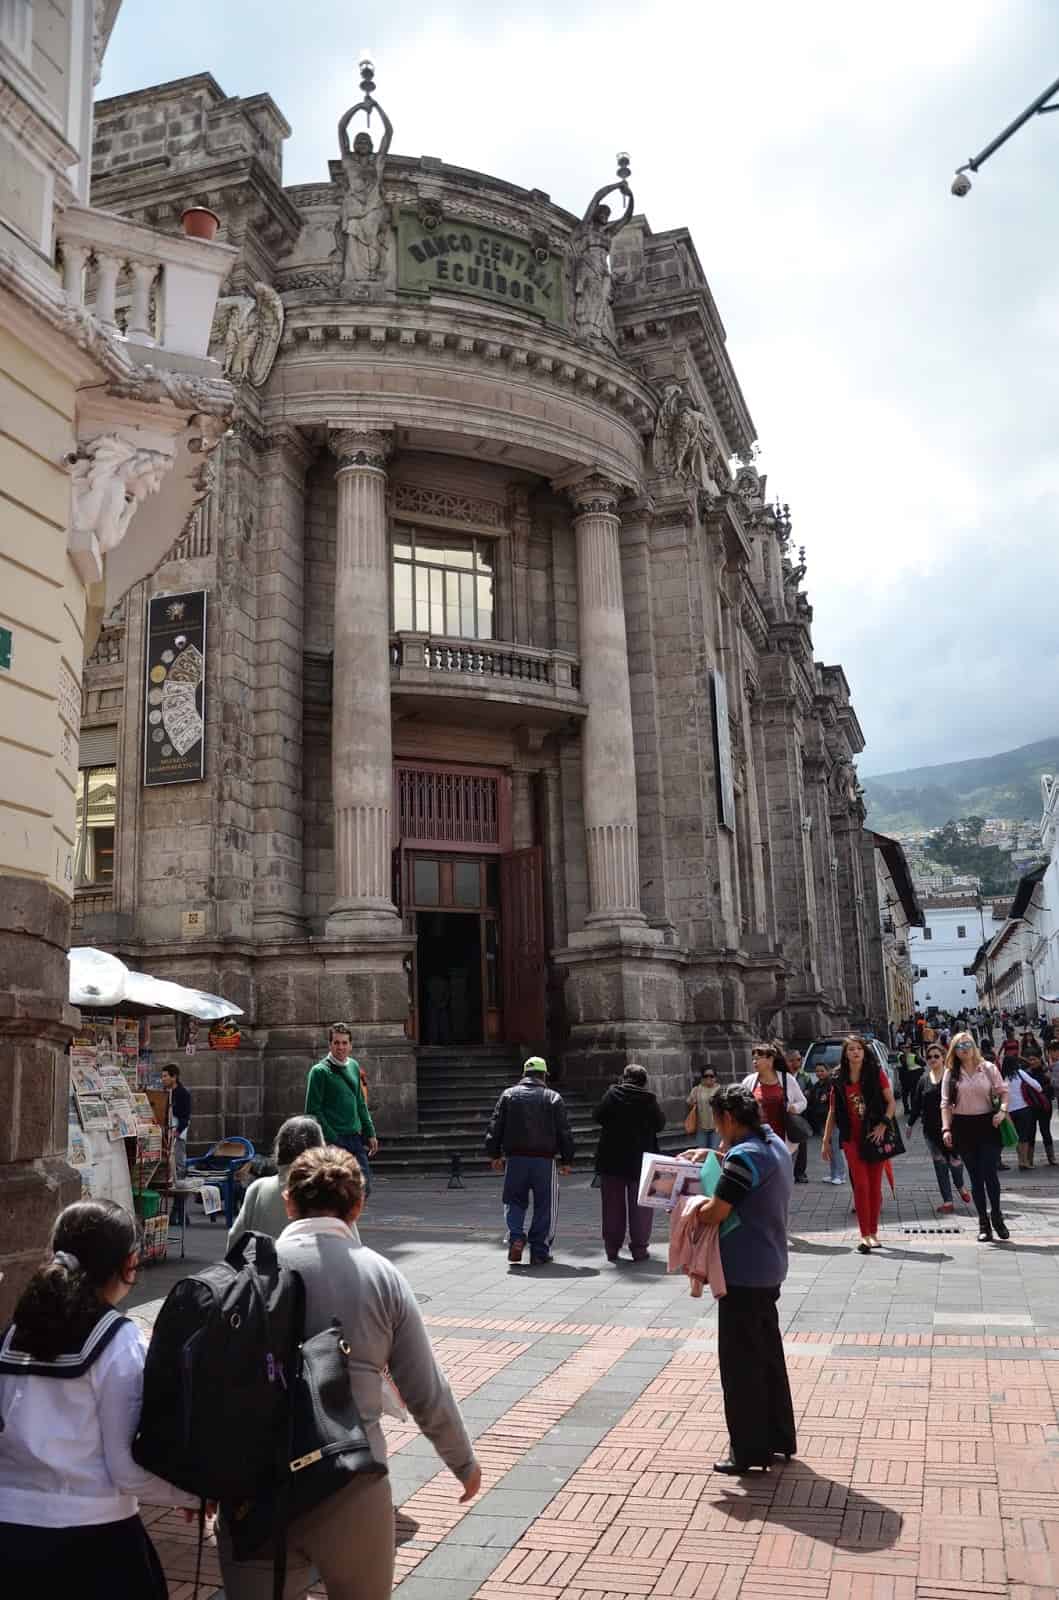 Banco Central del Ecuador in Quito